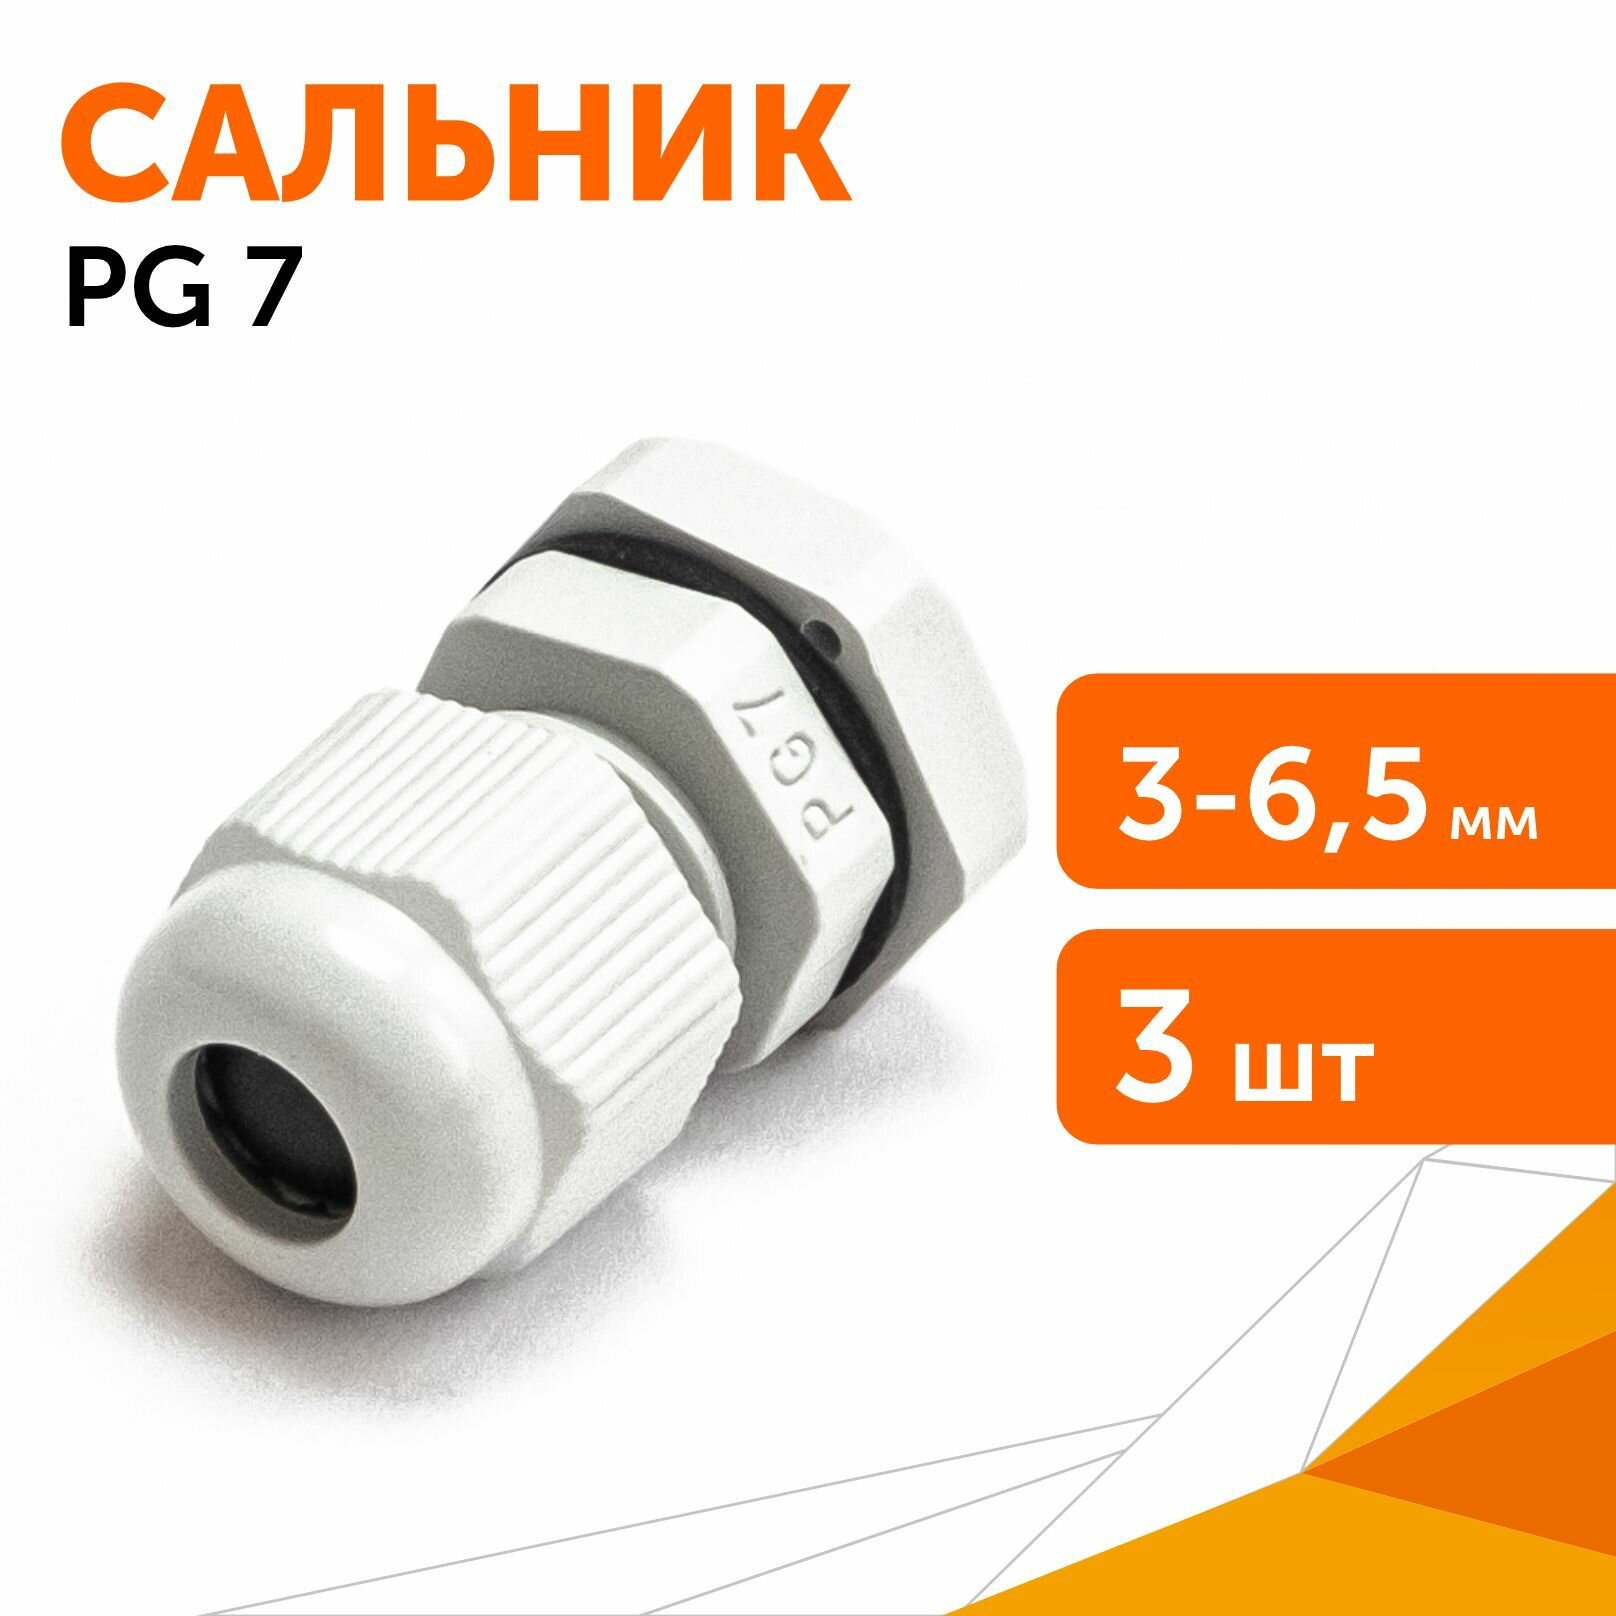 Сальник PG 7 (IP68) d отверстия 3-6,5 мм серый, 3 шт/уп